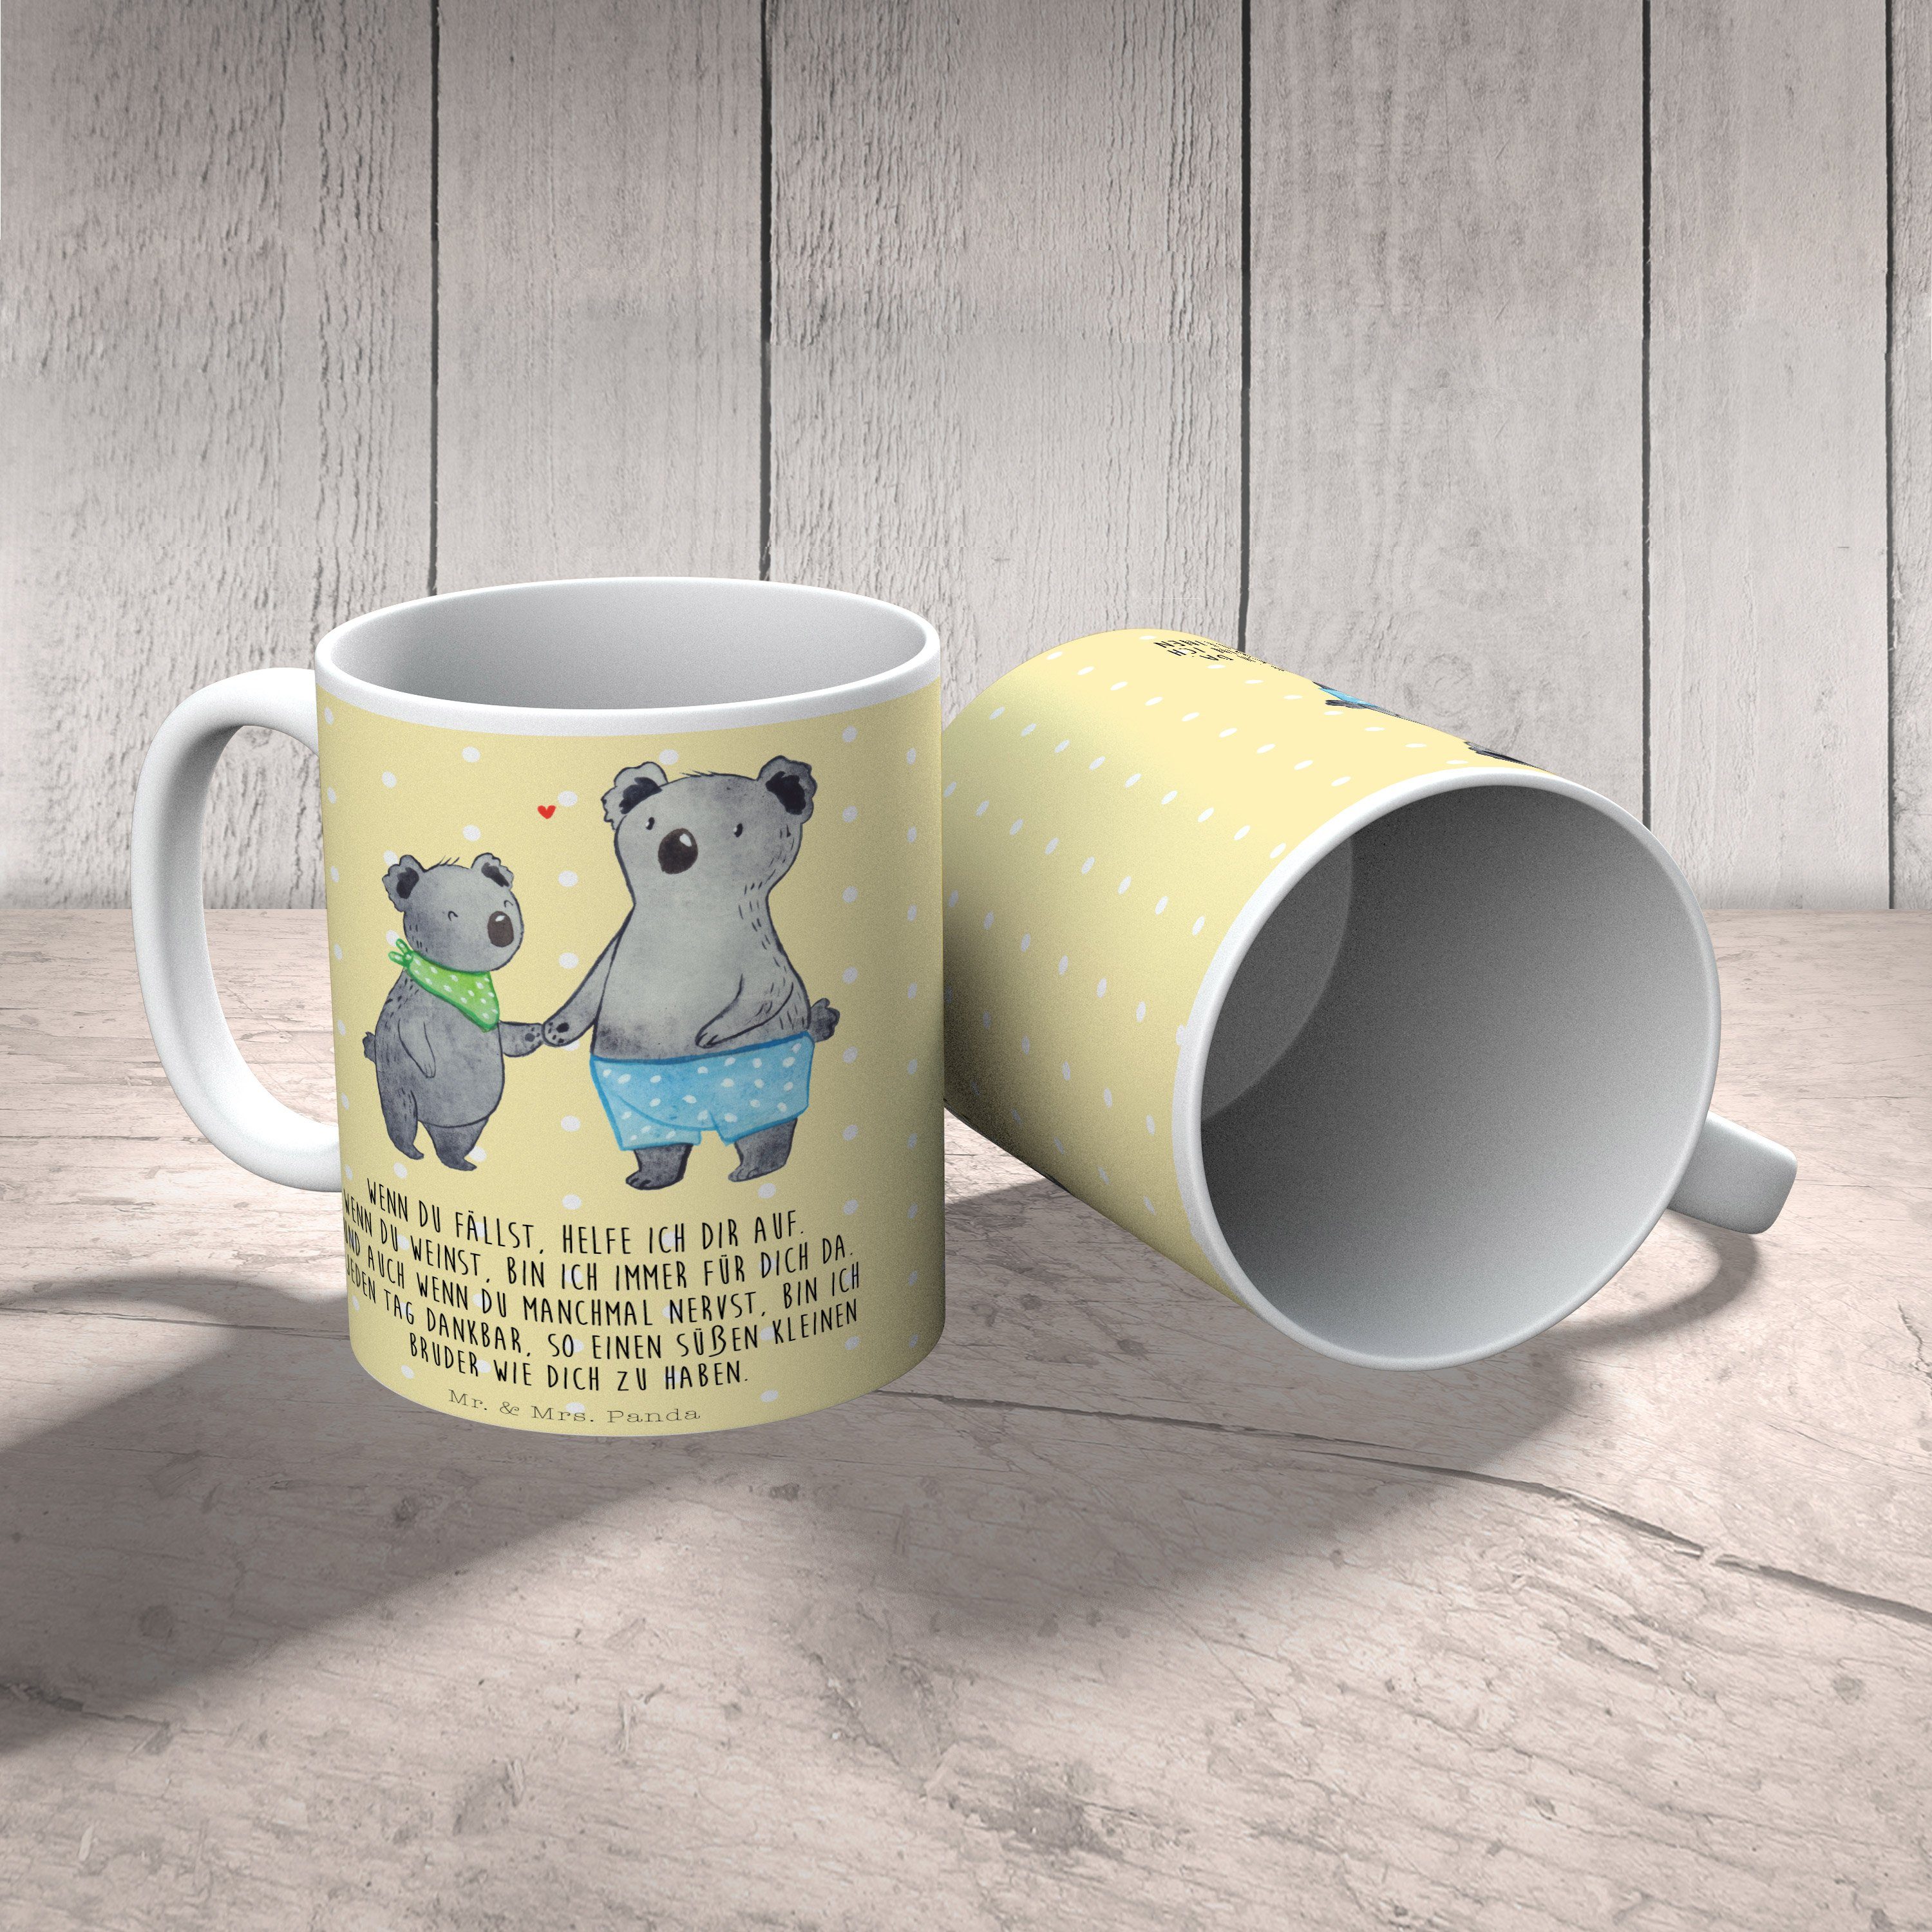 Koala Pastell - Keramik Geschenk & Tasse, Kleiner beste, Tasse Mr. Mrs. Panda Gelb - Geschenk, Bruder